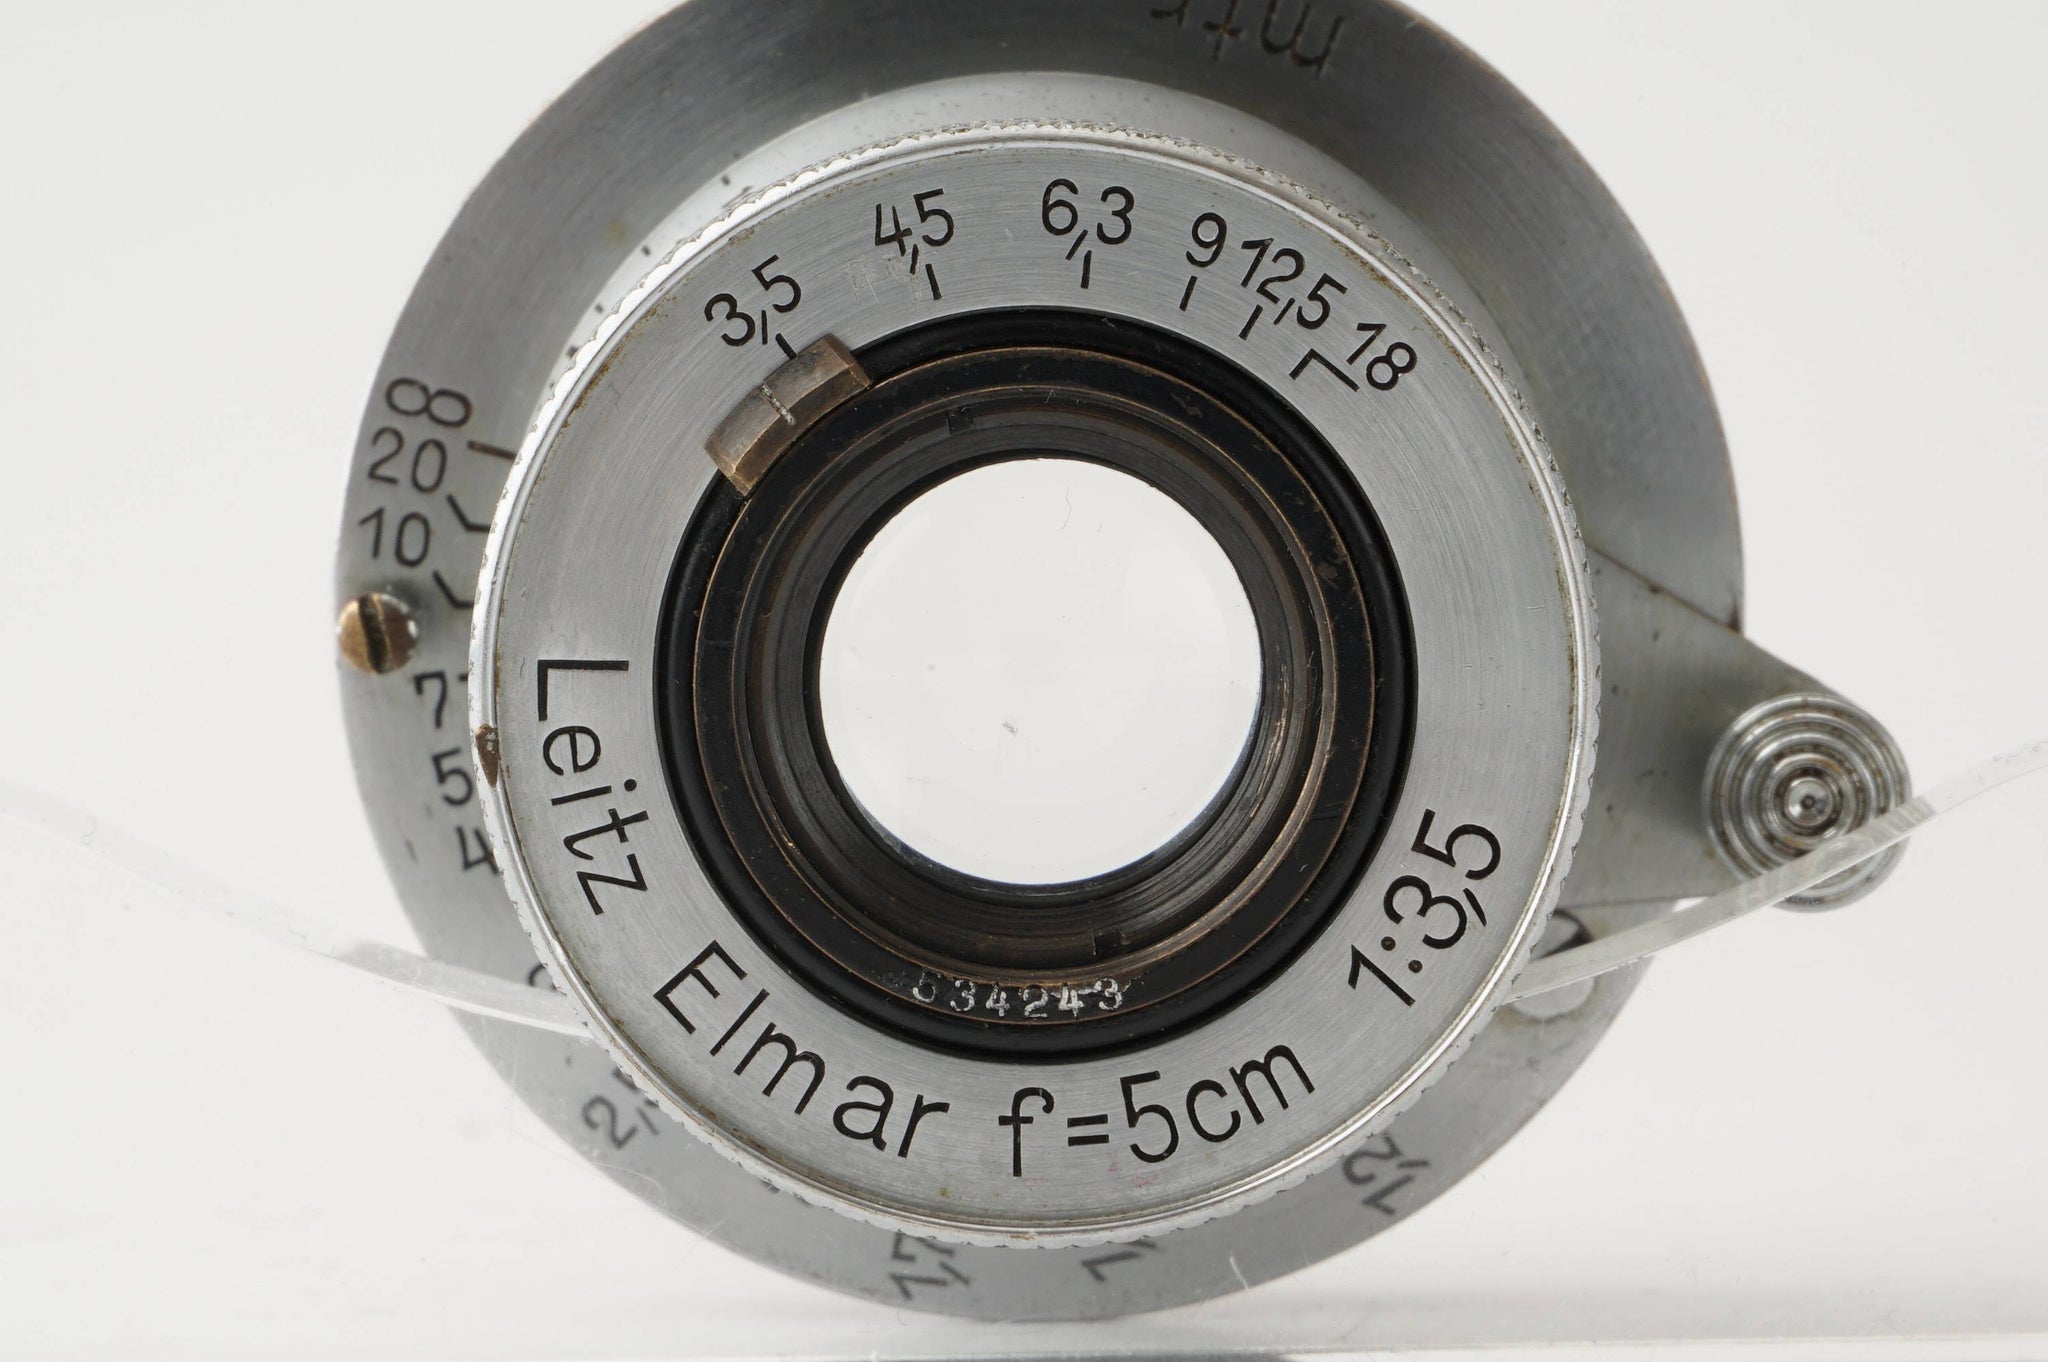 Leica Leitz Elmar 5cm 50mm f/3.5 L39 LTM – Natural Camera